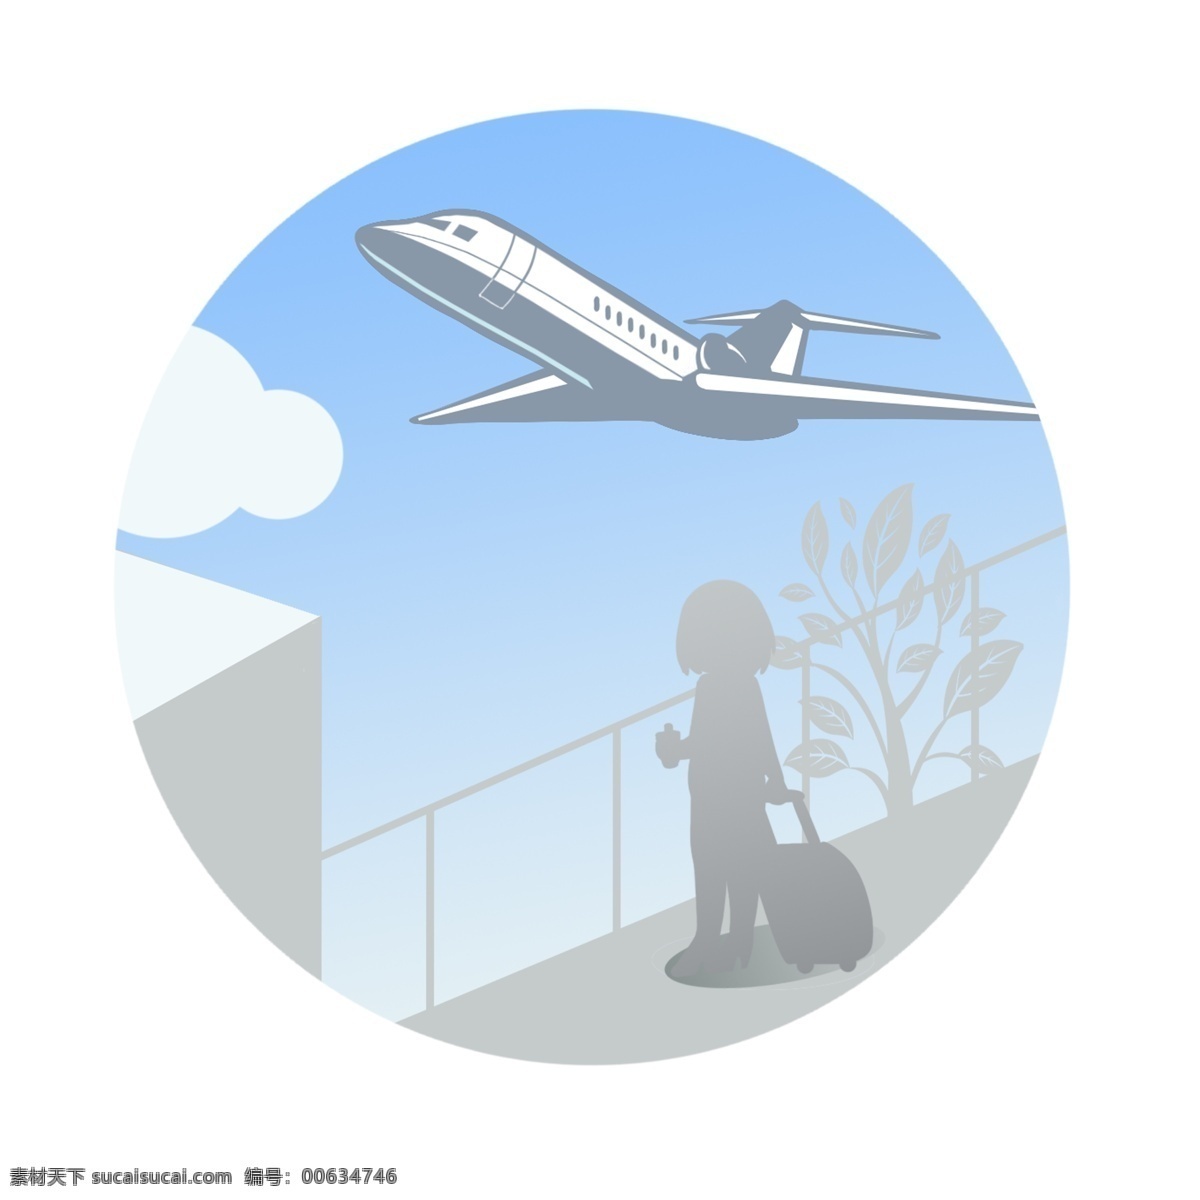 春节 春运 机场 回家 剪影 图 飞机 过年 图标 坐飞机 行李箱 上飞机 创意图标 飞机场